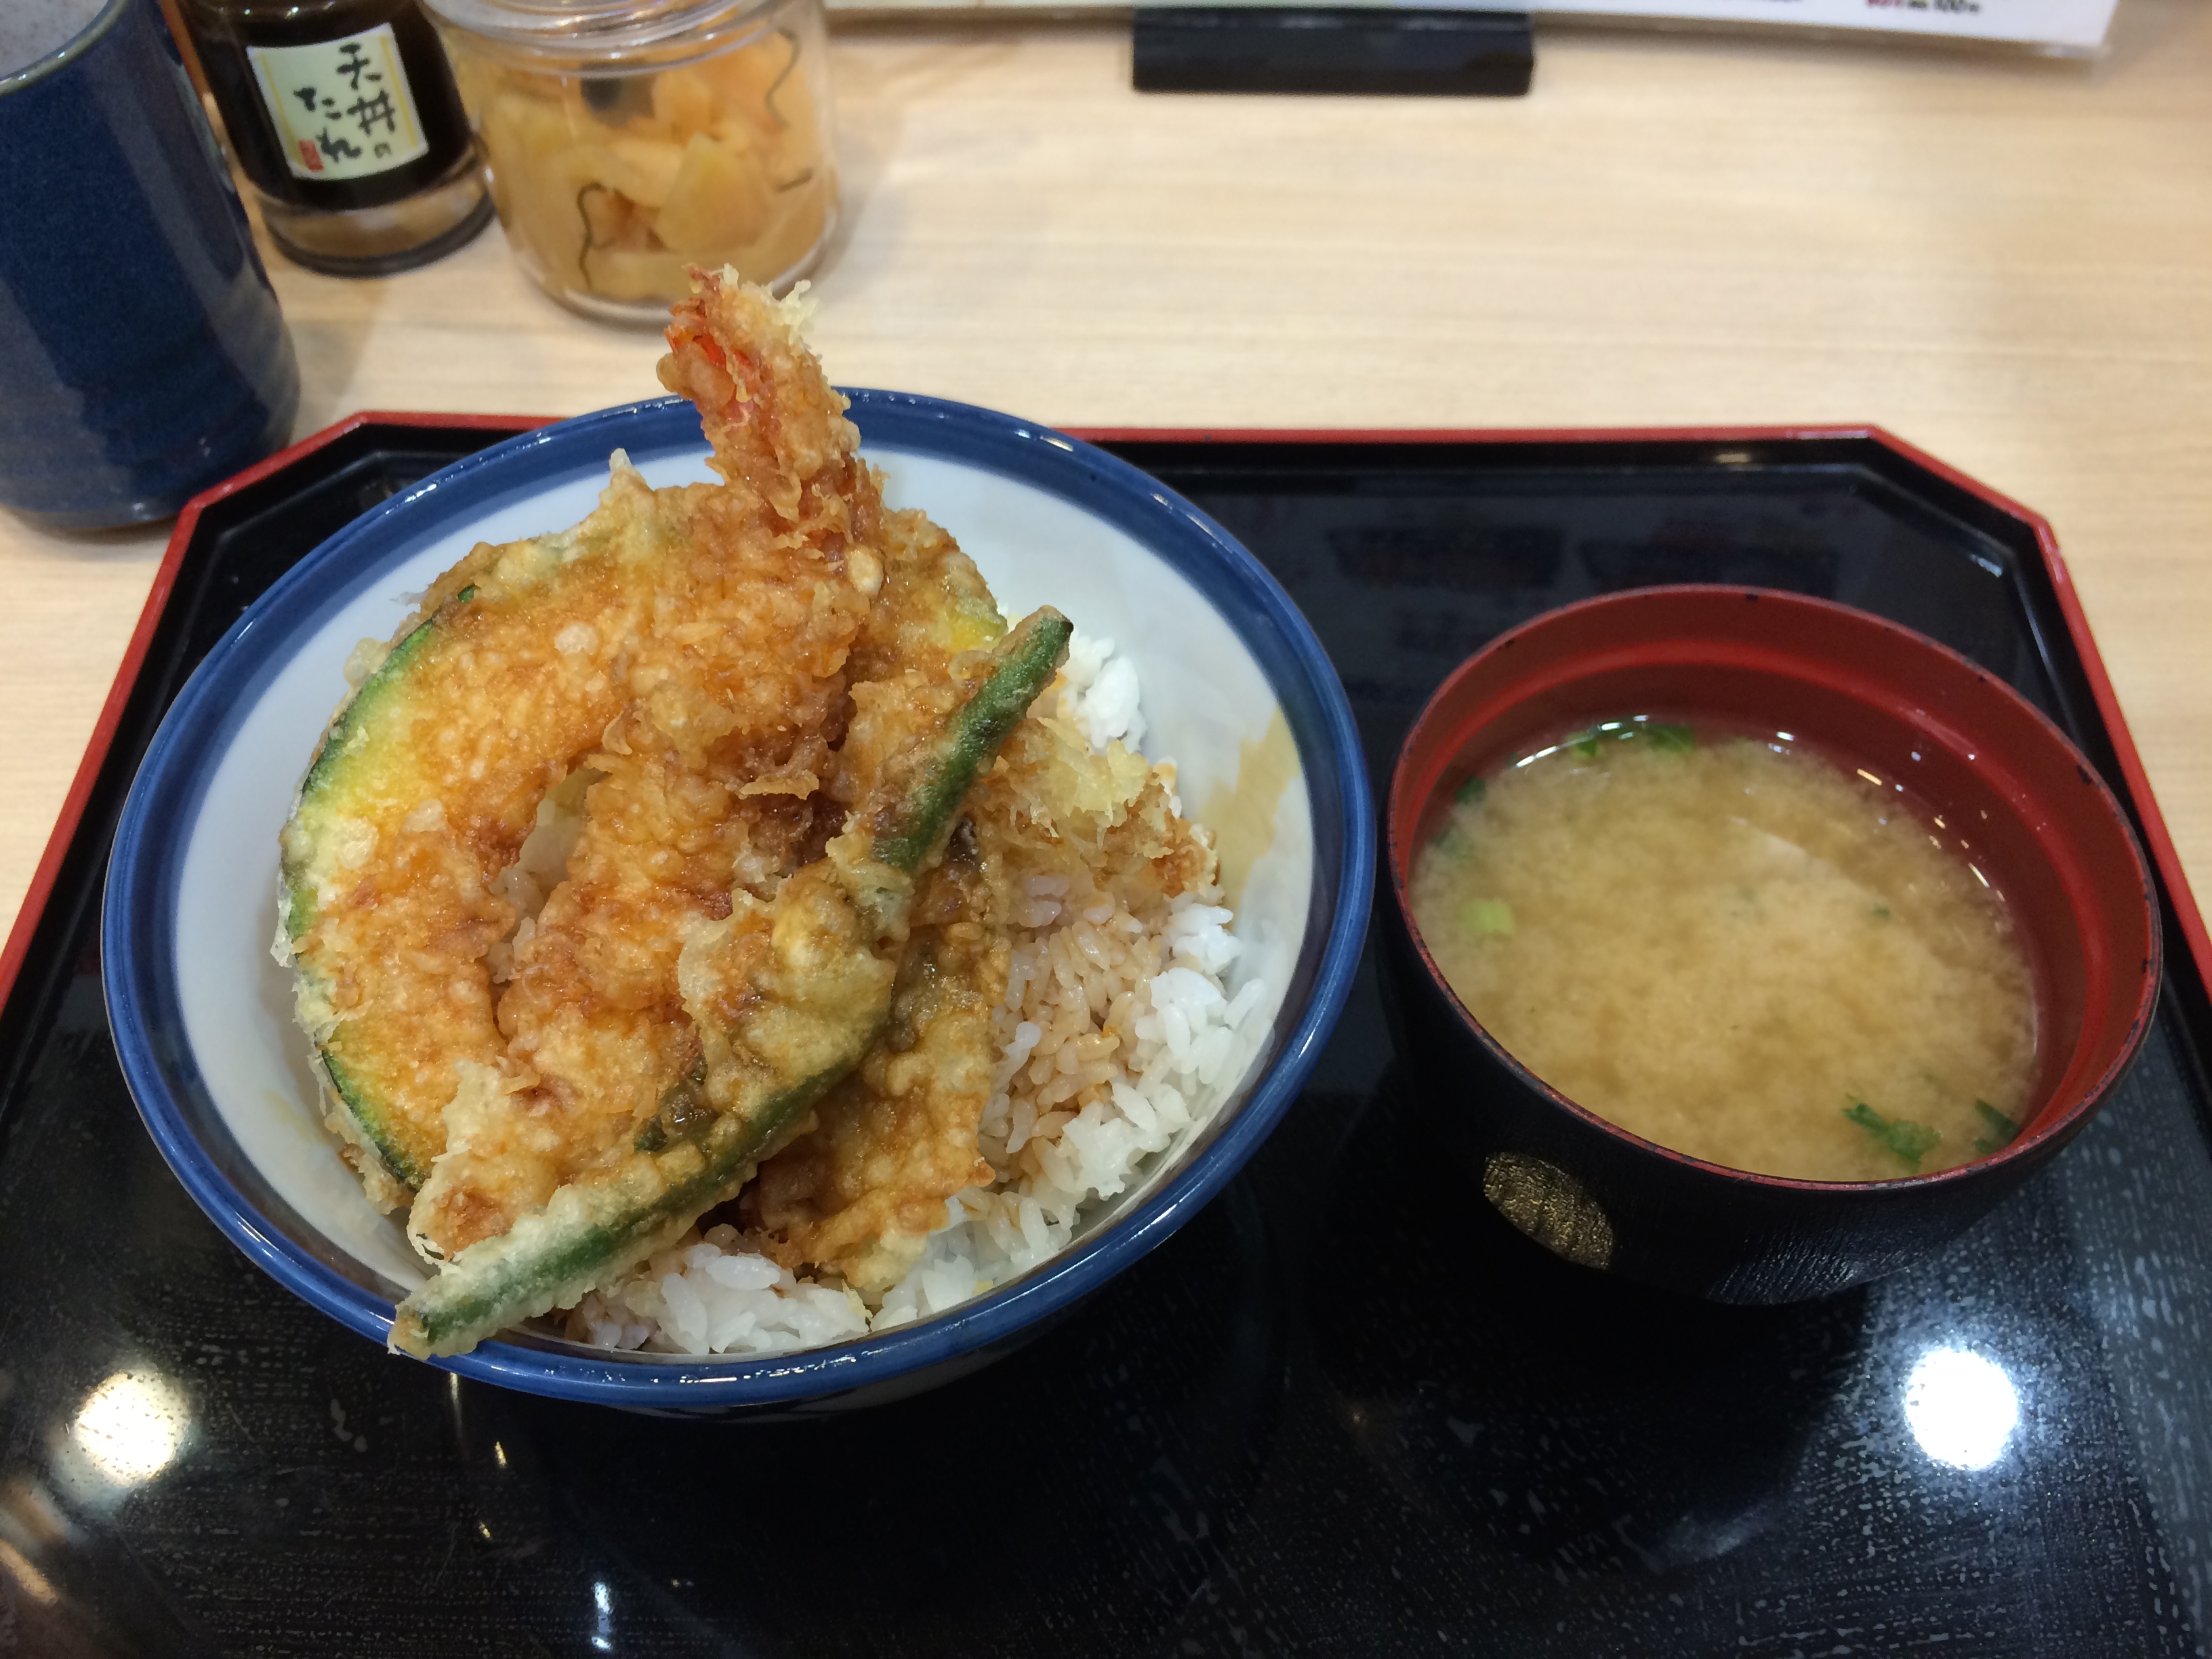 てんや 羽田空港店で人気メニュー 天丼の天ぷら食べる